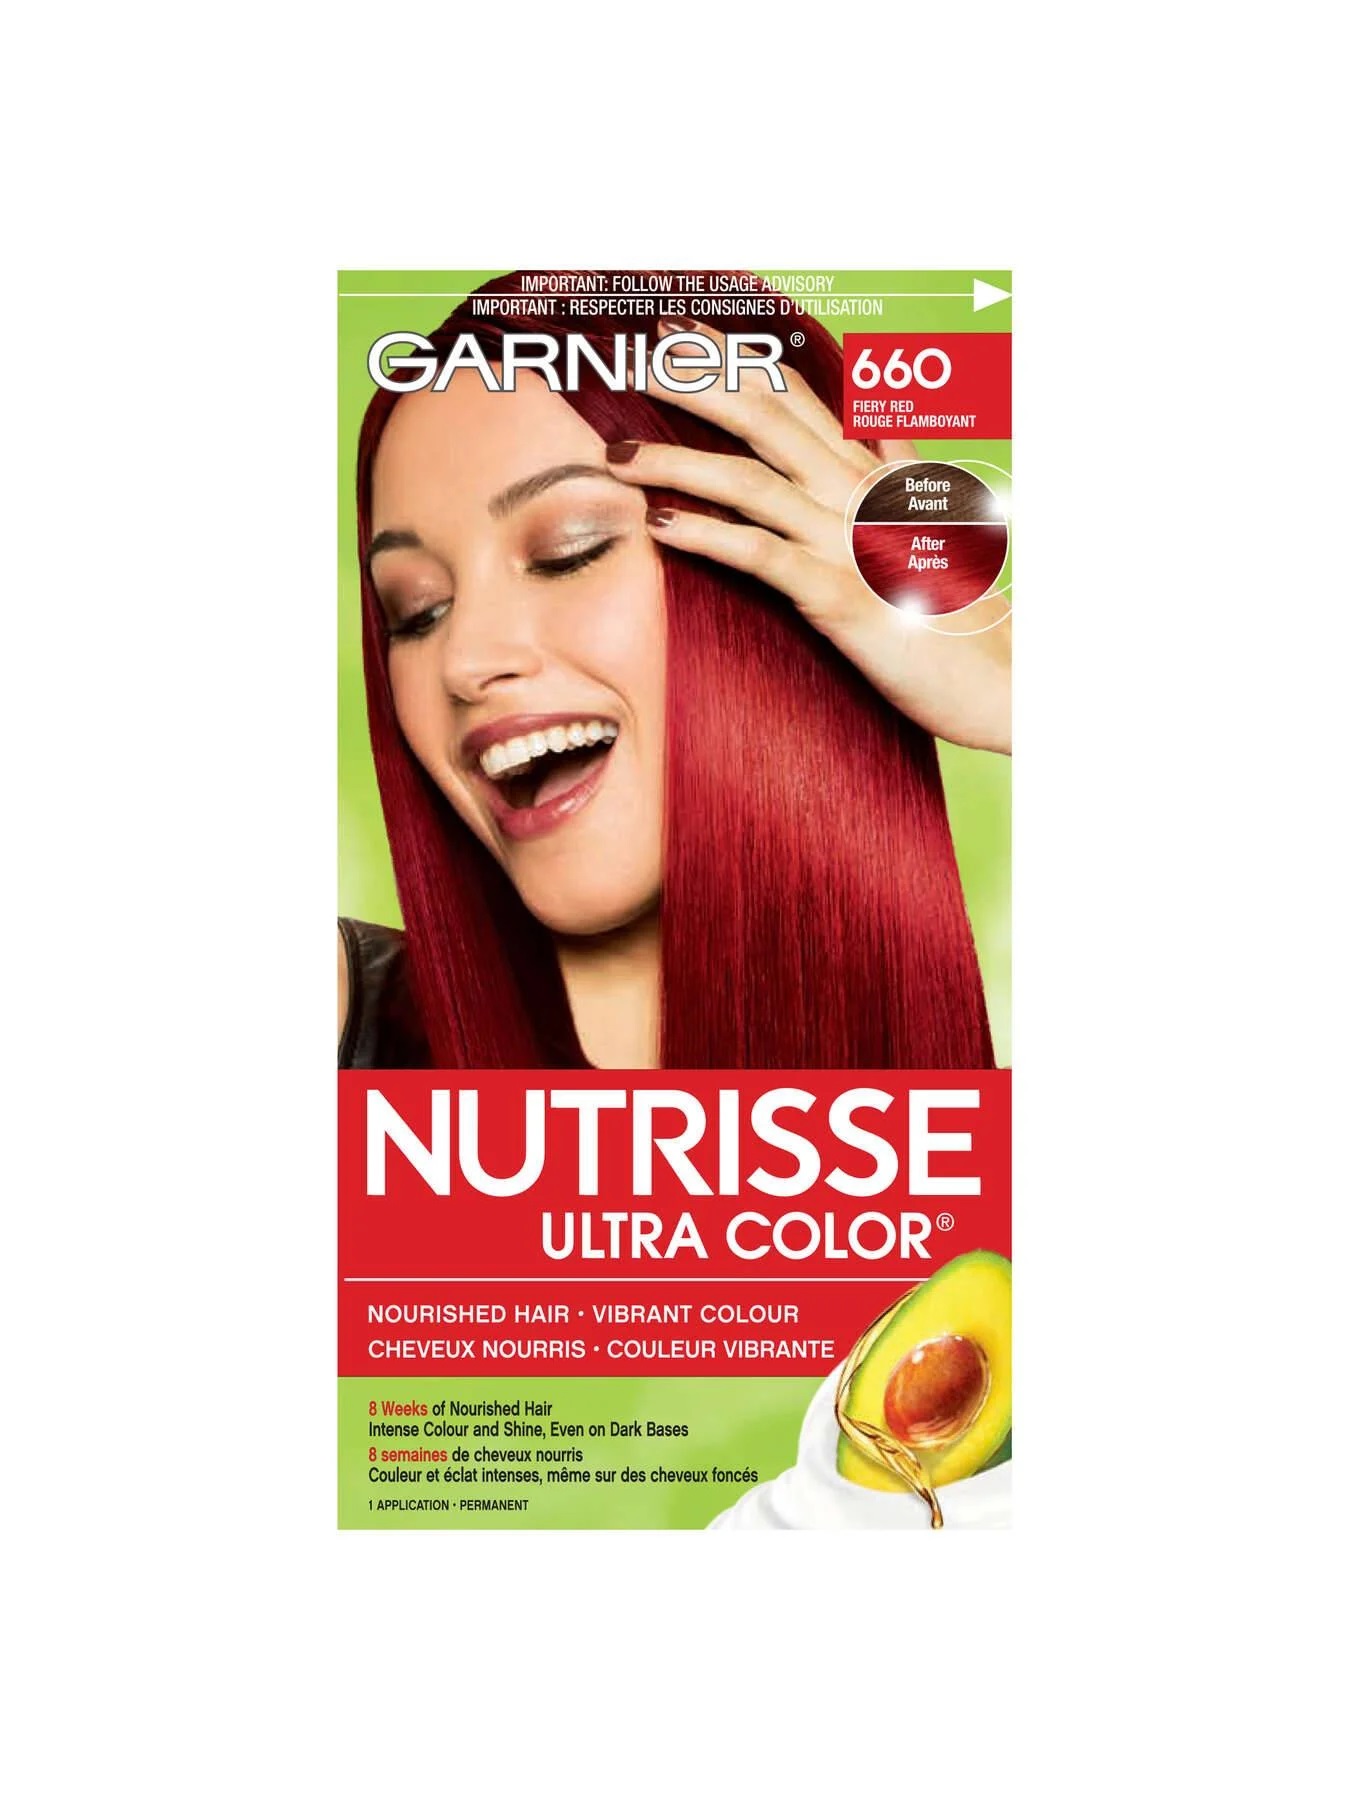 Garnier:Nutrisse Ultra Color Fiery Red Beauty Wiki Fandom